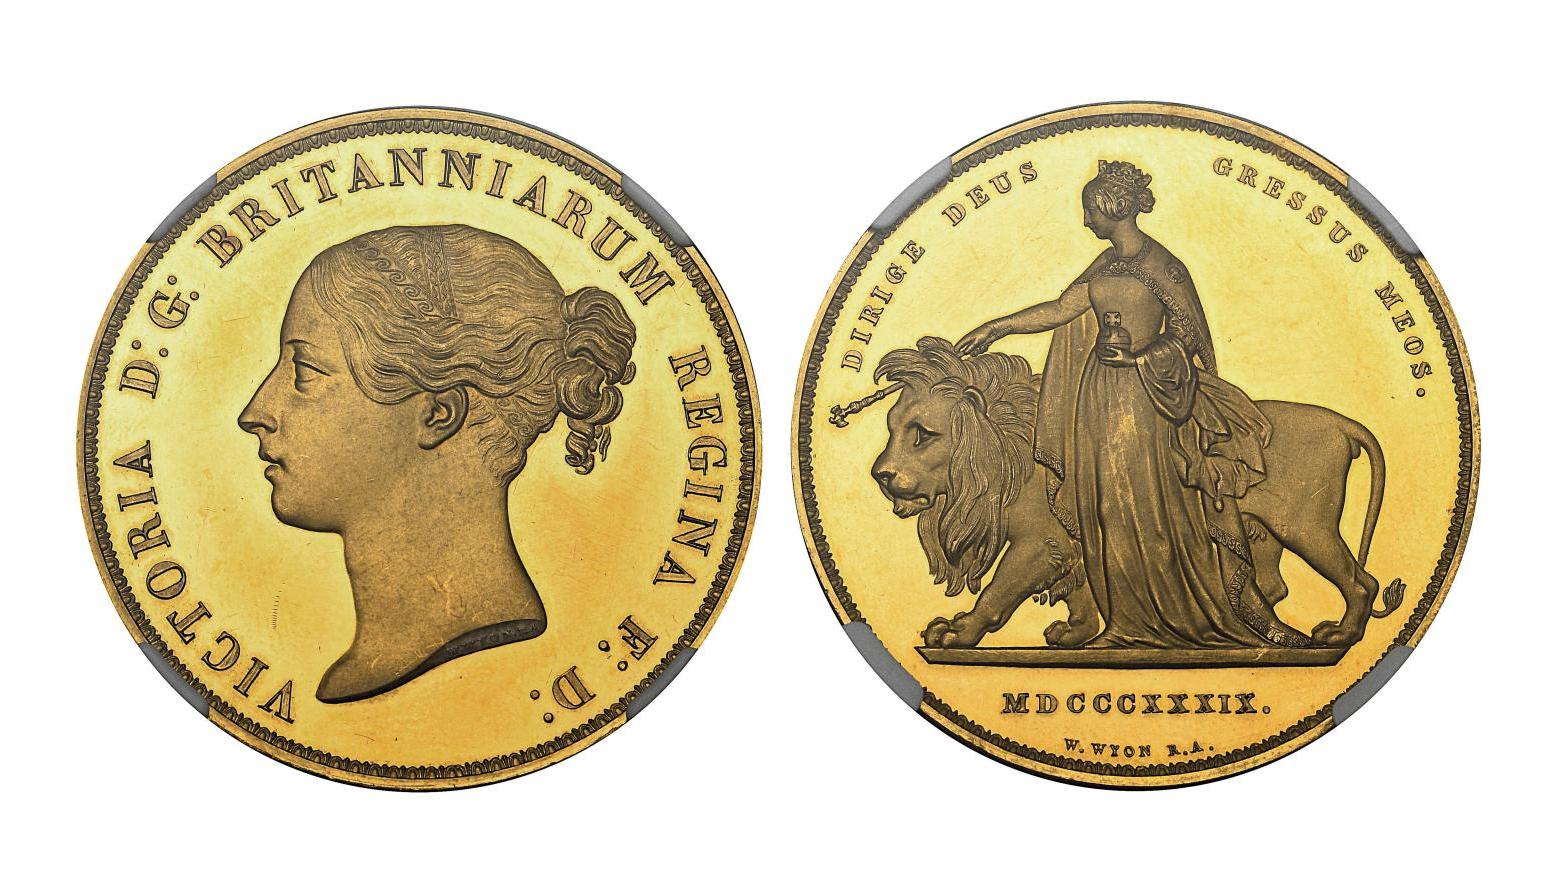 Grande-Bretagne, règne de Victoria (1837-1901), pièce en or de 5 £ illustrant Una... Una et le Lion, en honneur à la reine Victoria 